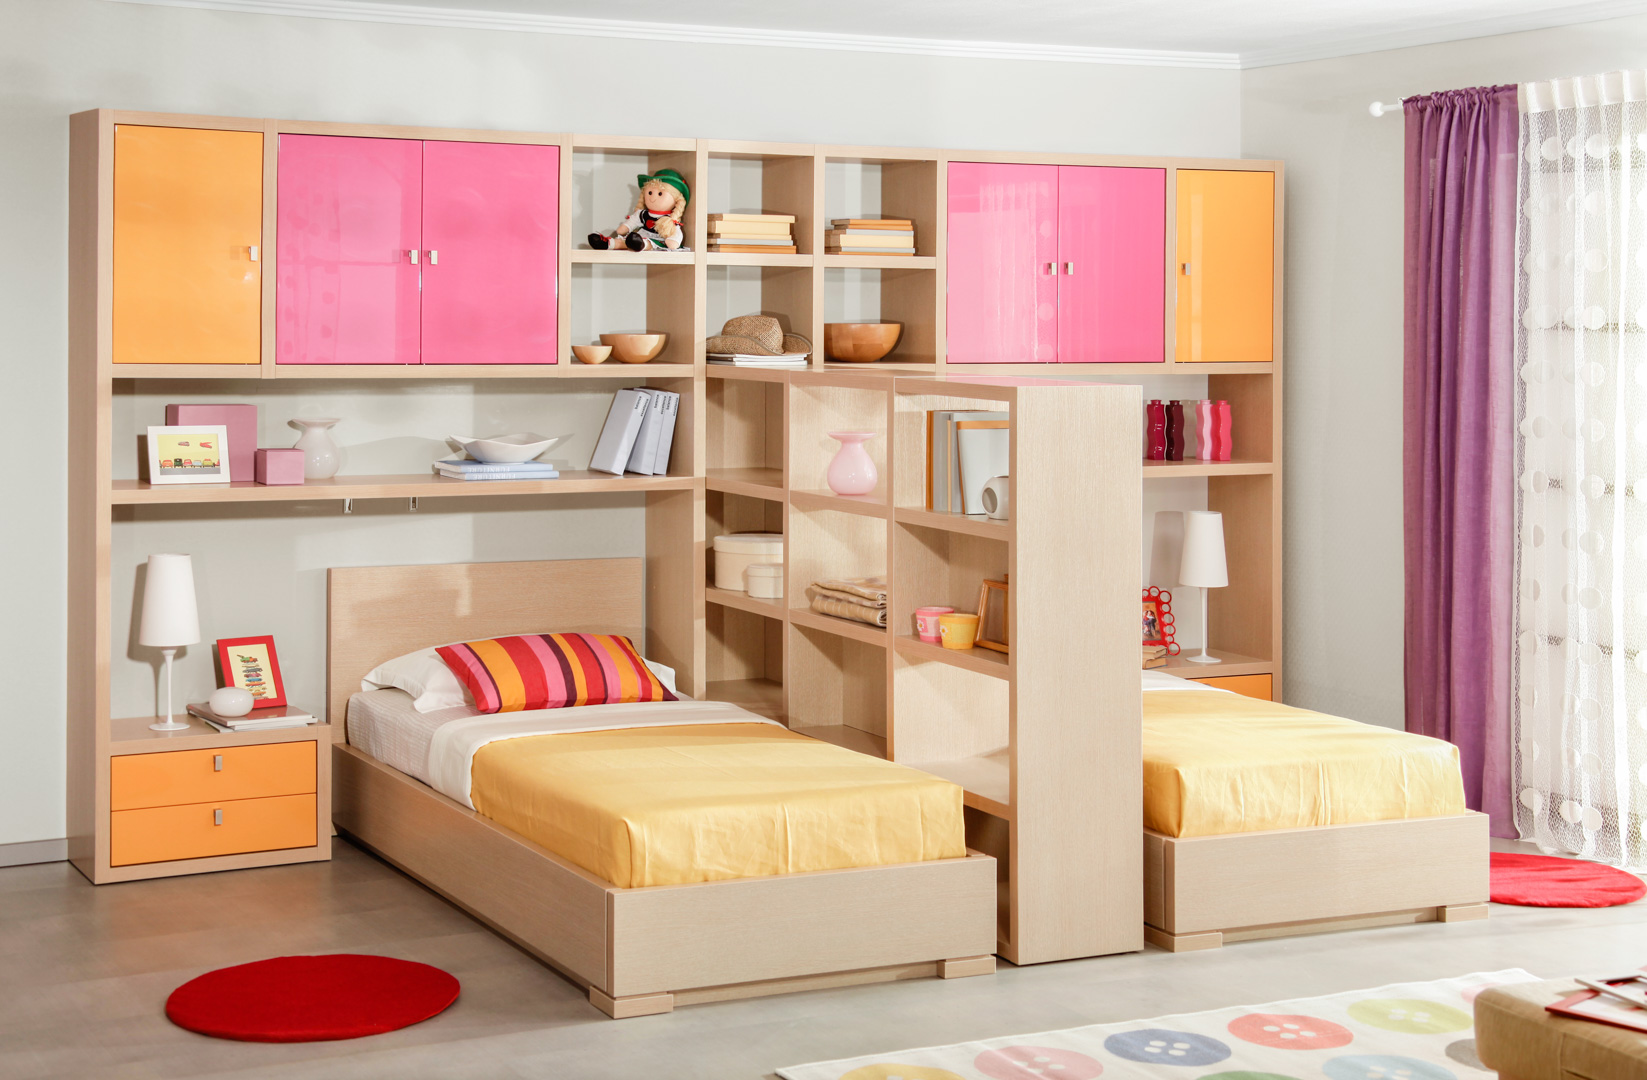 Детские спальни мебель для двоих детей